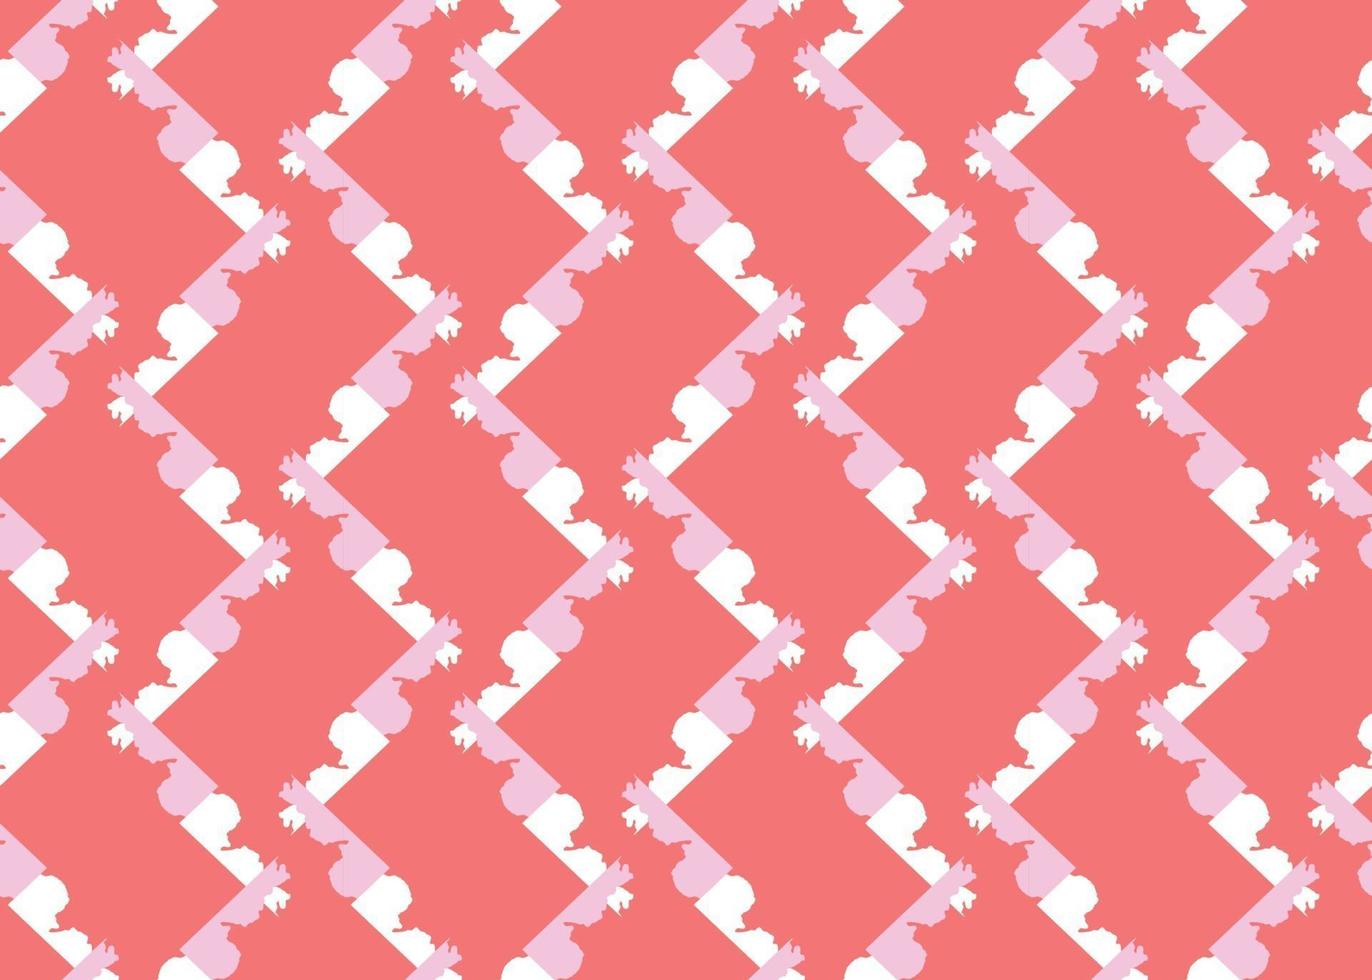 Vektor Textur Hintergrund, nahtloses Muster. handgezeichnete, rote, rosa, weiße Farben.